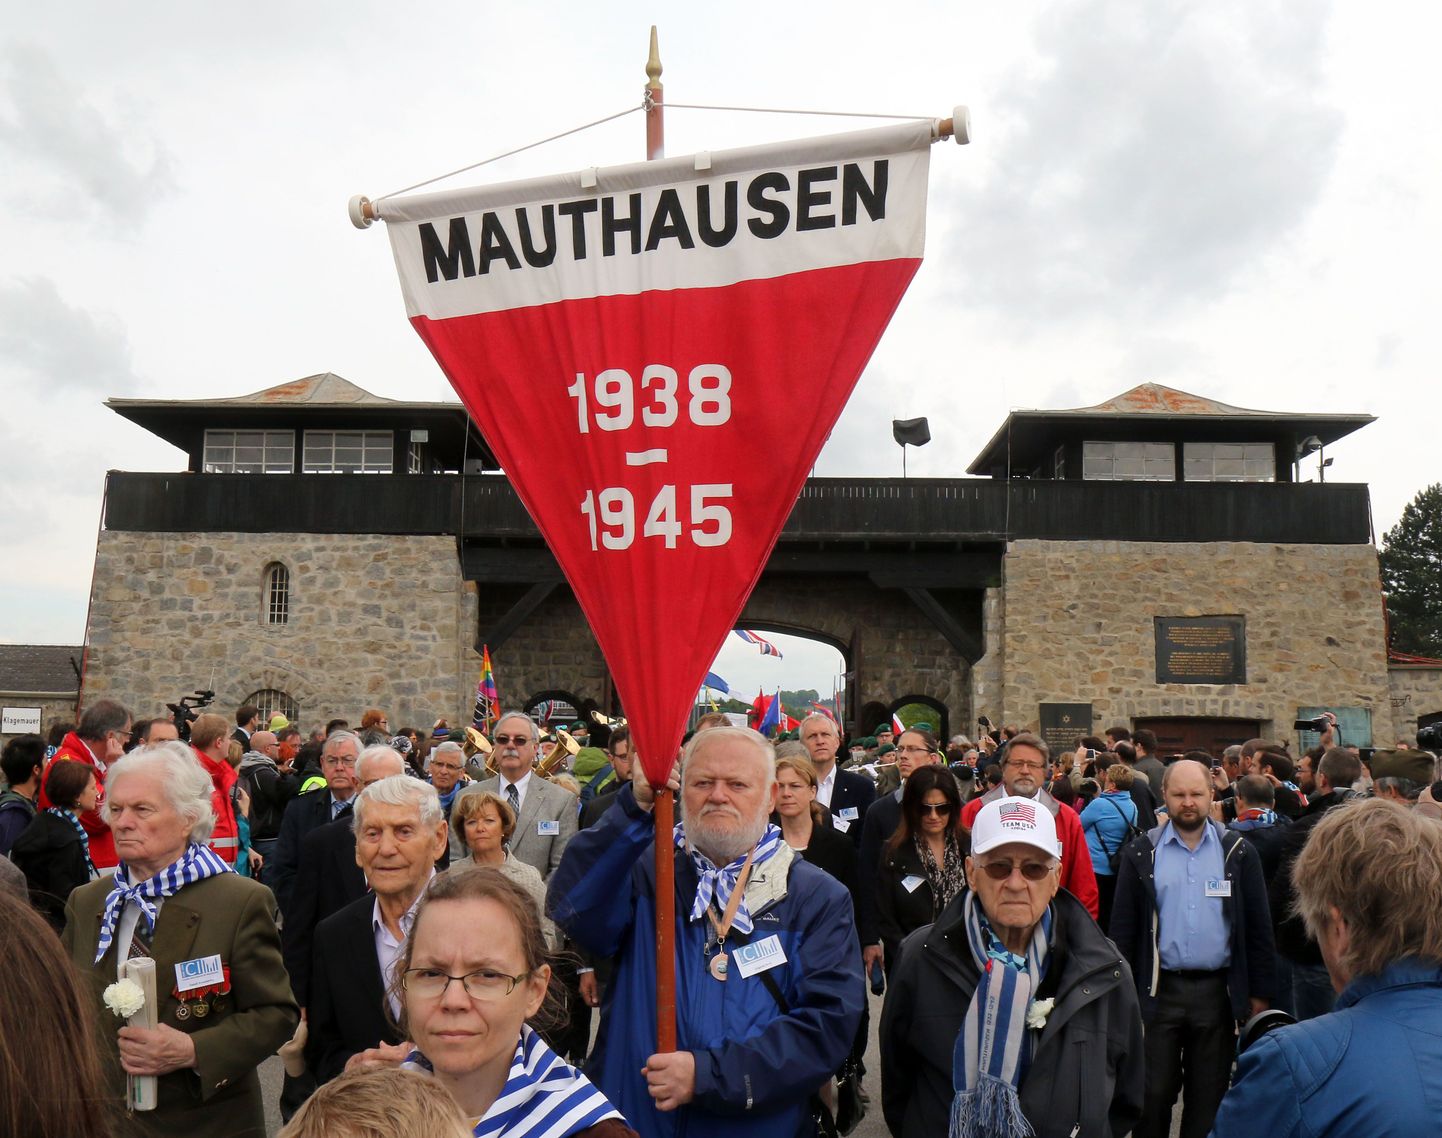 Mauthausenis meenutati kohaliku koonduslaagri vabastamist